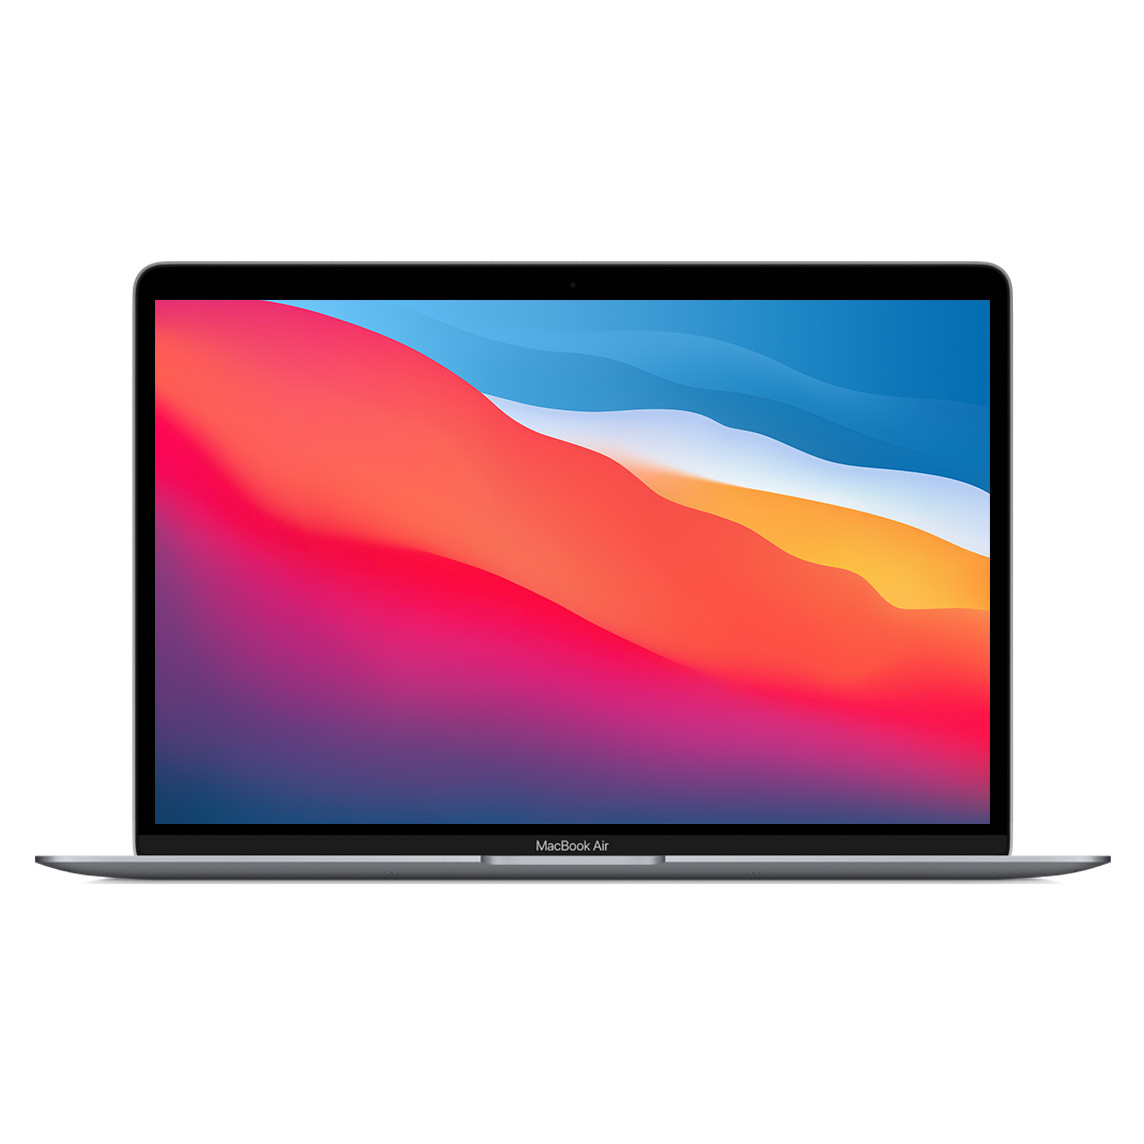 13,3" MacBook Air, Grau, geöffnet, schmale Einfassung, FaceTime HD Kamera, gerundeter Rand